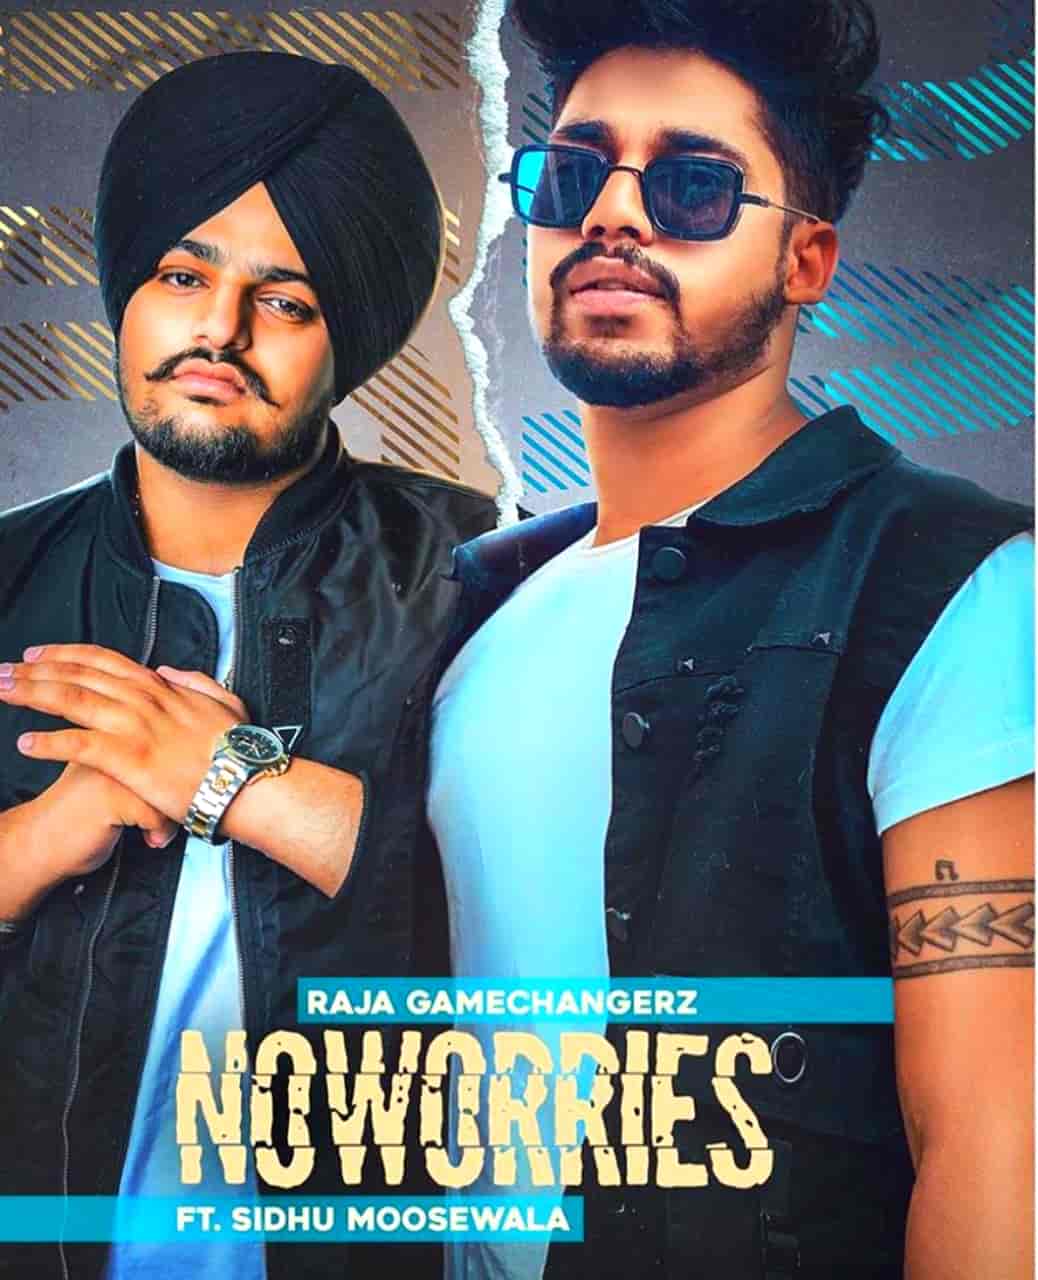 No Worries Punjabi Song Image By Sidhu Moose Wala and Raja Game Changerz